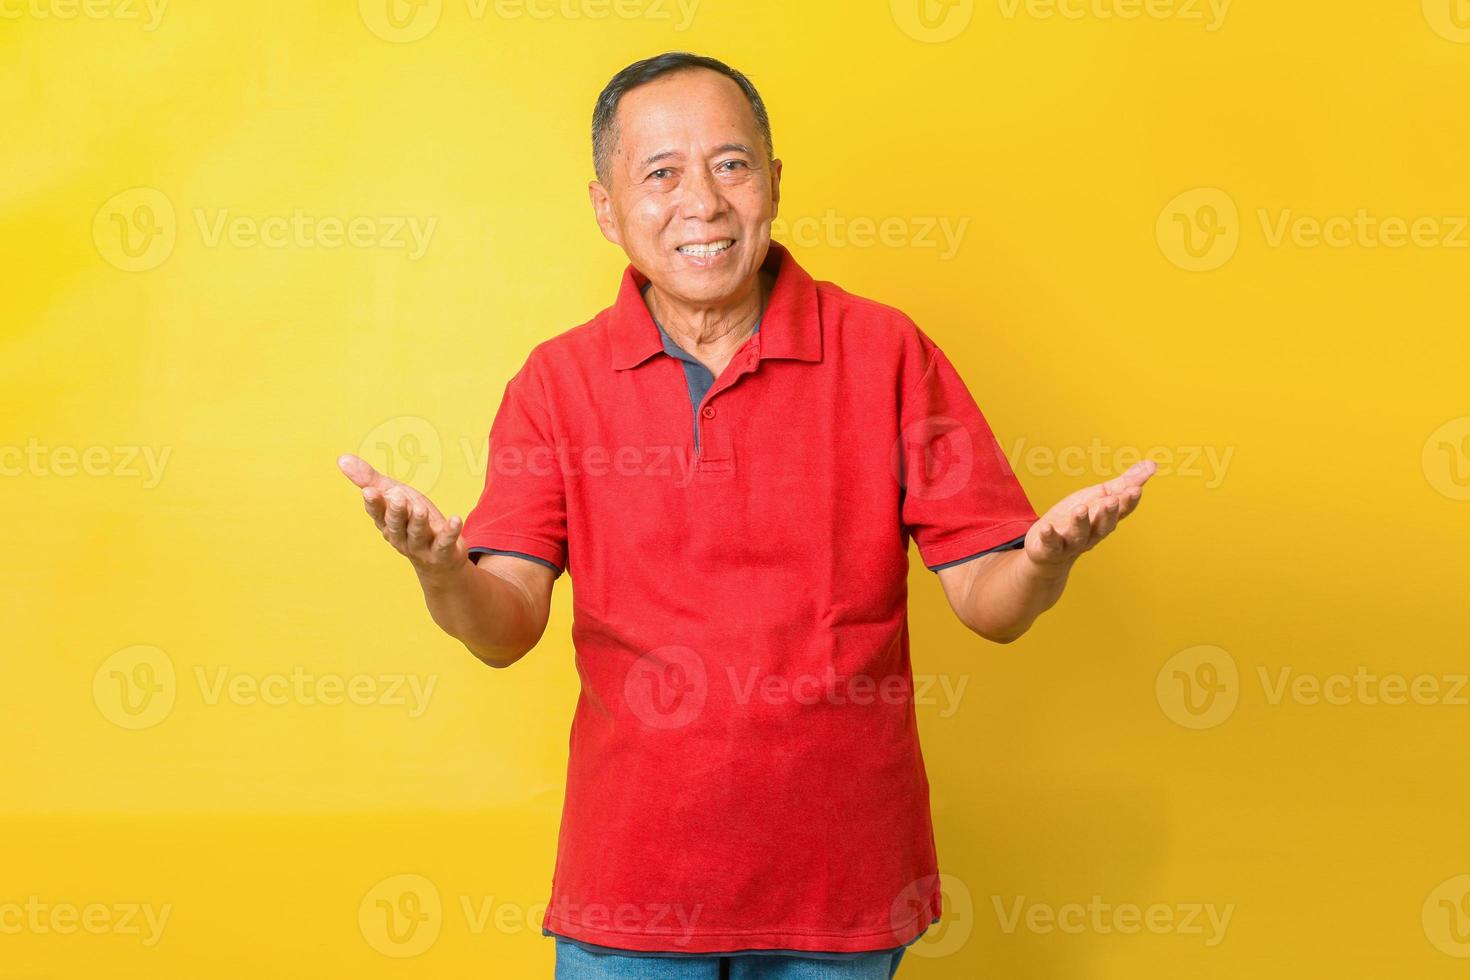 el retrato de un anciano jubilado asiático alegre que usa una camiseta roja está sonriendo y saludando de bienvenida, señalando con la mano o presentando. foto